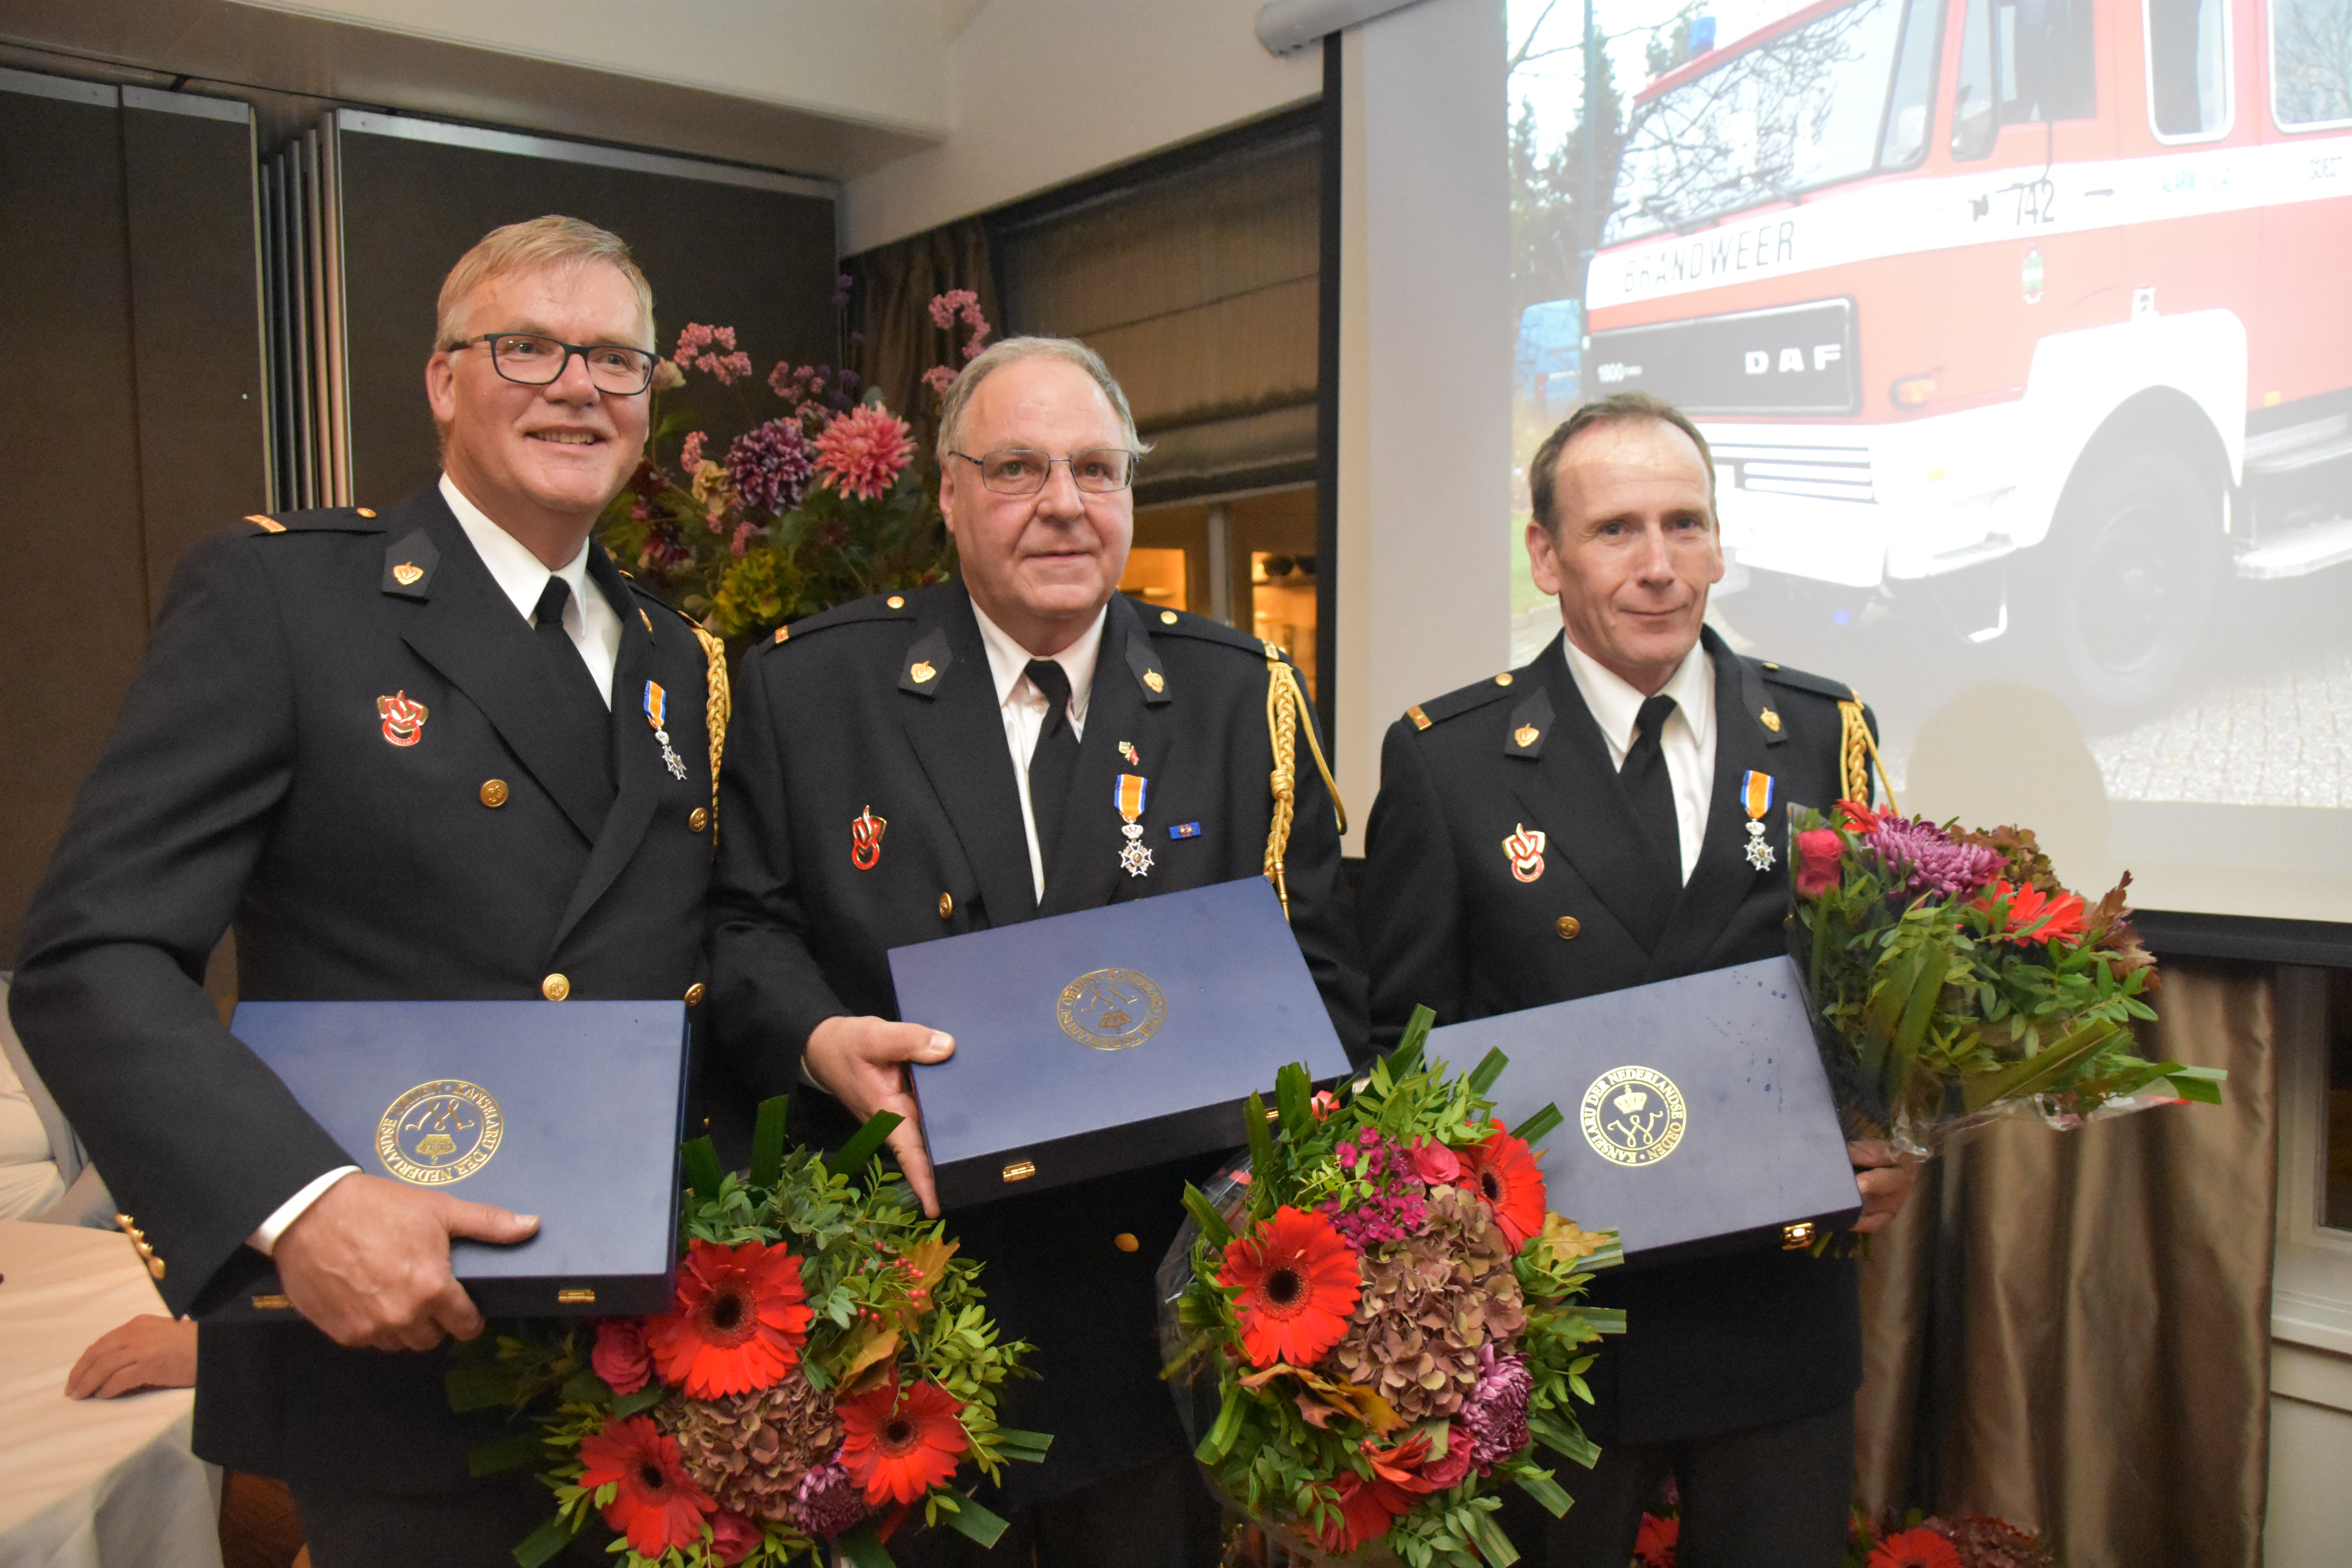 Koninklijke onderscheiding voor drie brandweervrijwilligers